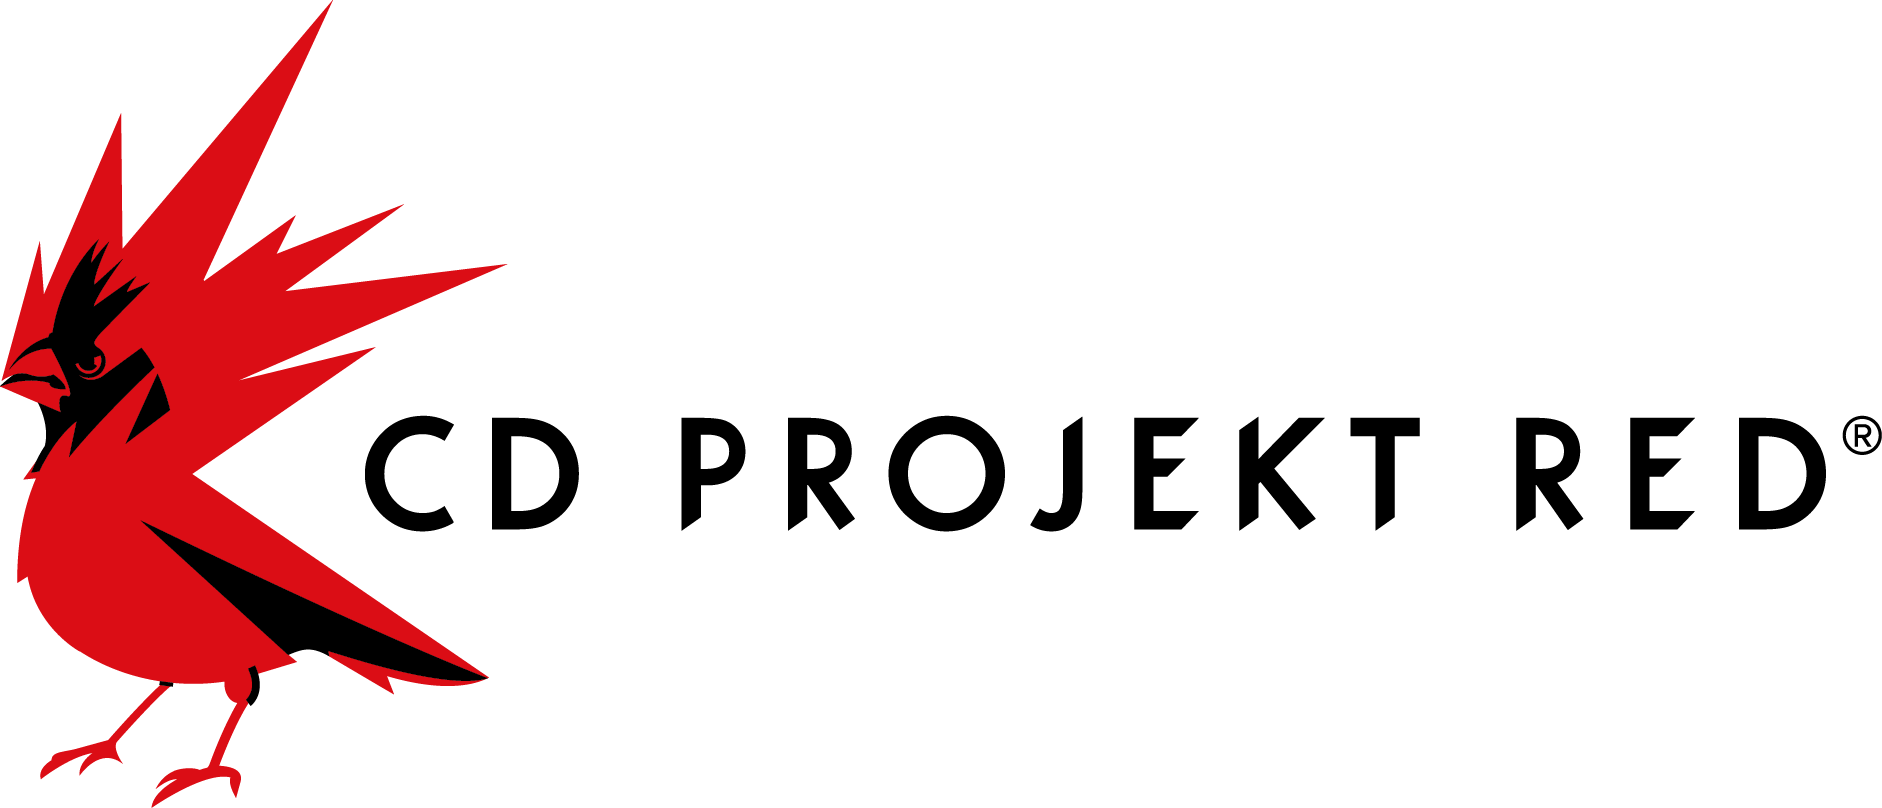 CD Projekt RED abre un nuevo estudio